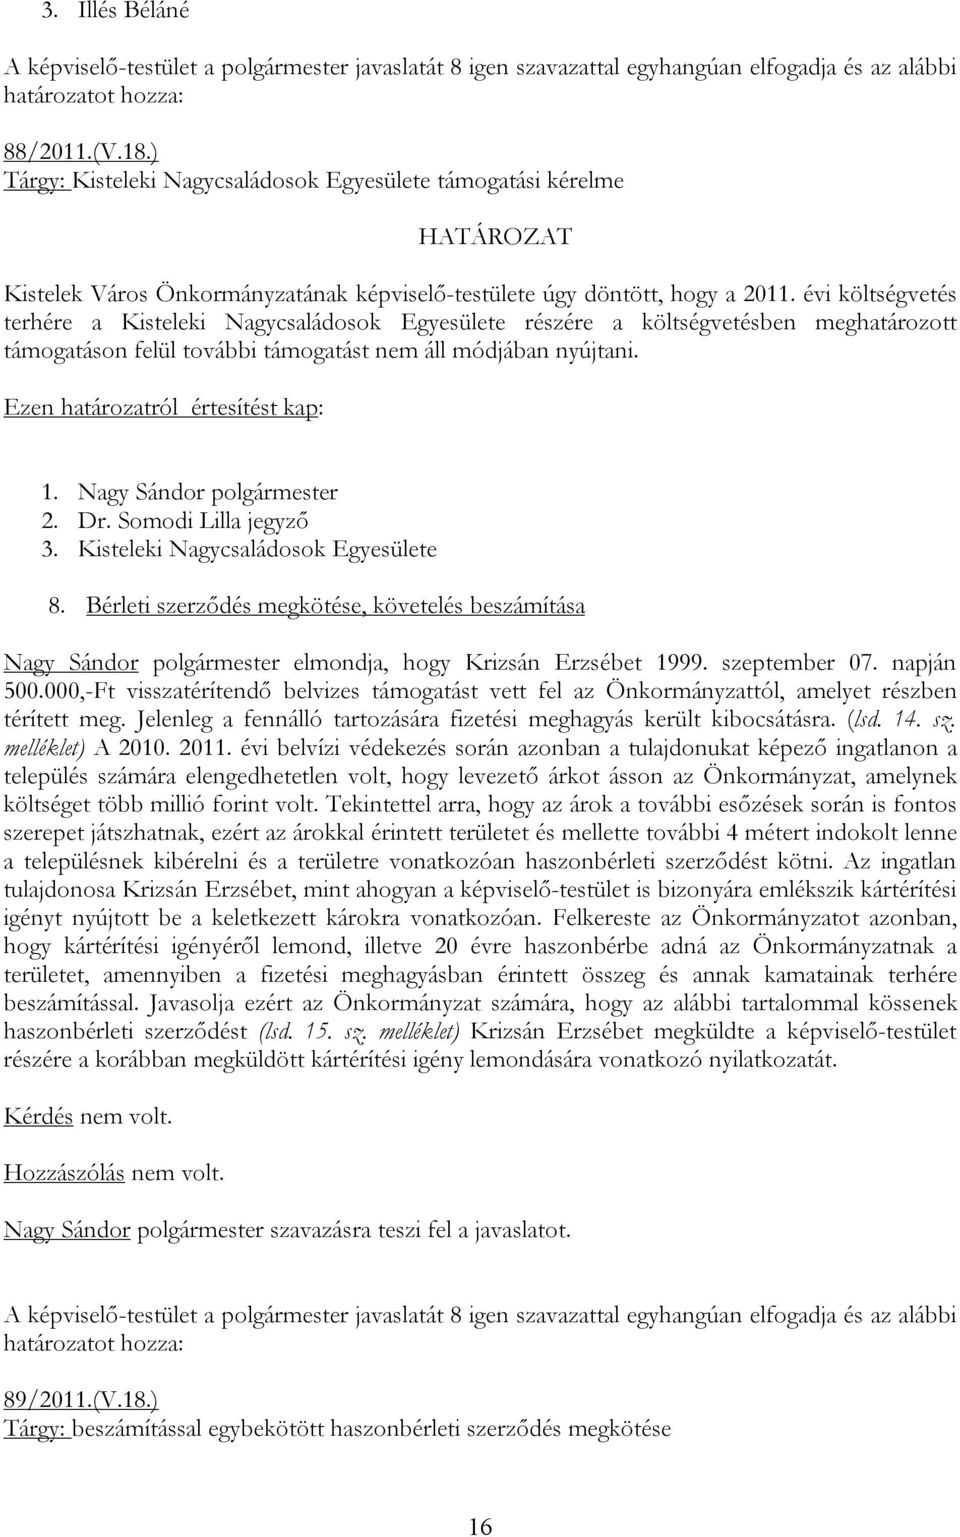 Kisteleki Nagycsaládosok Egyesülete 8. Bérleti szerződés megkötése, követelés beszámítása Nagy Sándor polgármester elmondja, hogy Krizsán Erzsébet 1999. szeptember 07. napján 500.